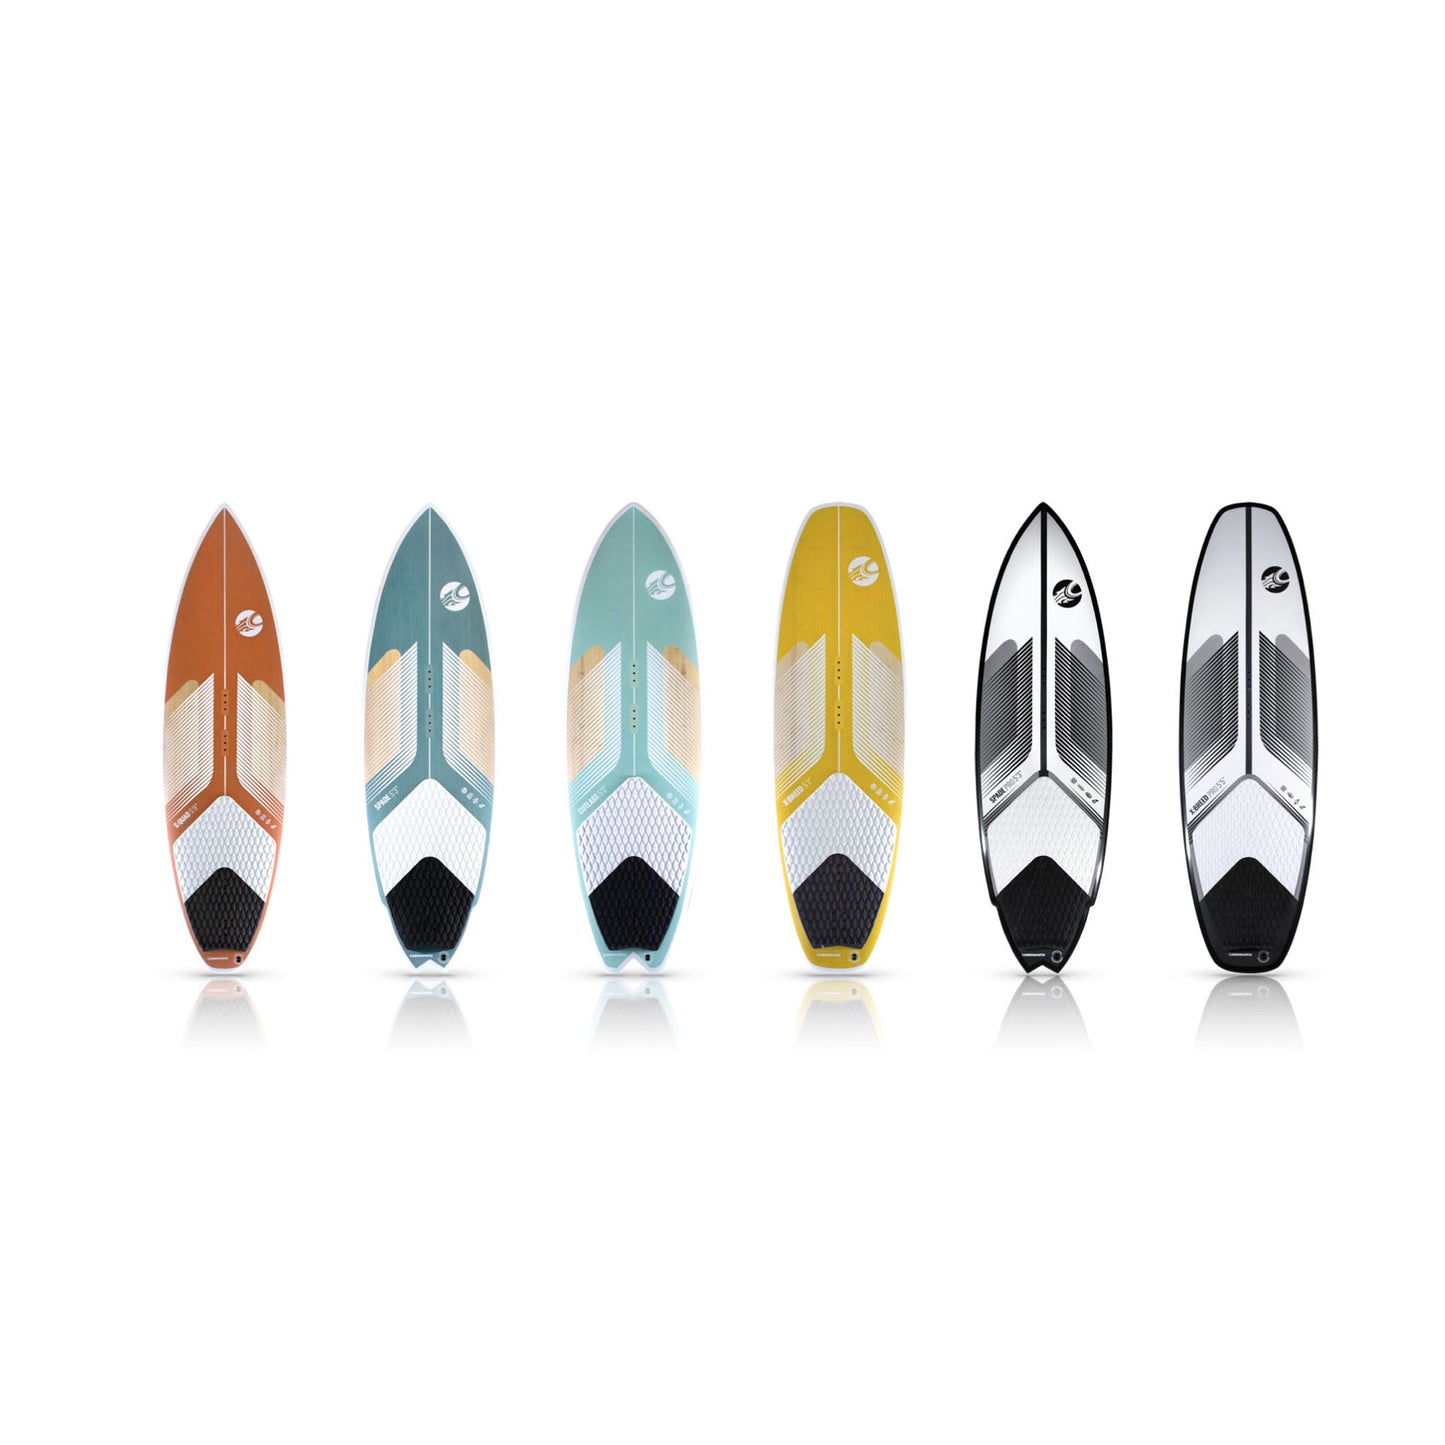 Cabrinha Spade Pro 2022 - Surfboard Kiteboard